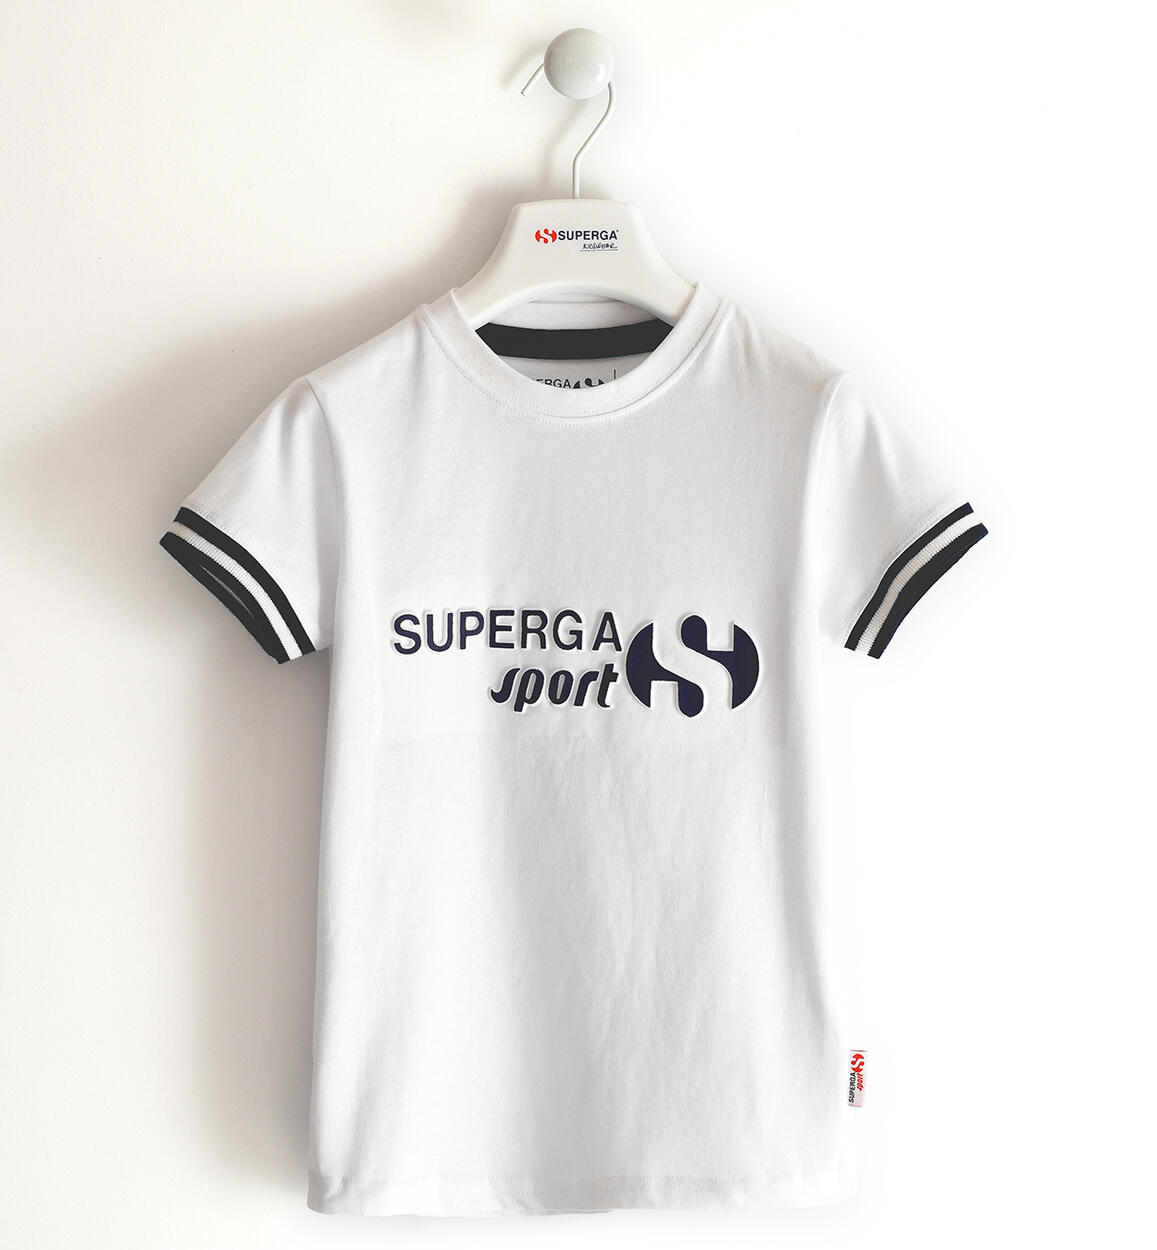 Superga T-shirt per bambino BIANCO SUPERGA